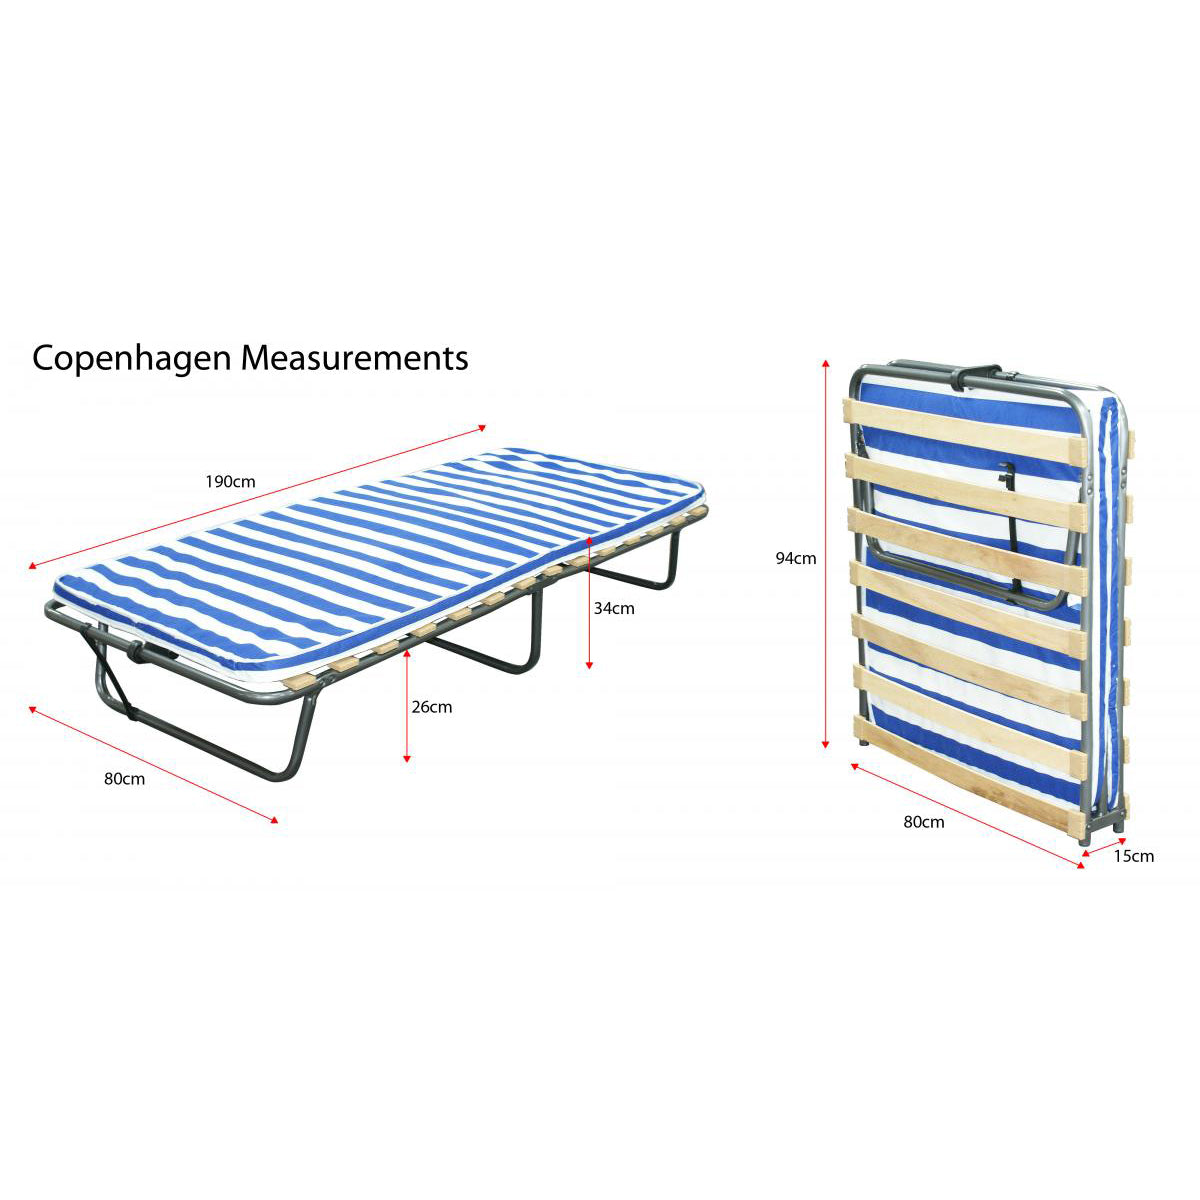 Copenhagen Folding Bed With Mattress